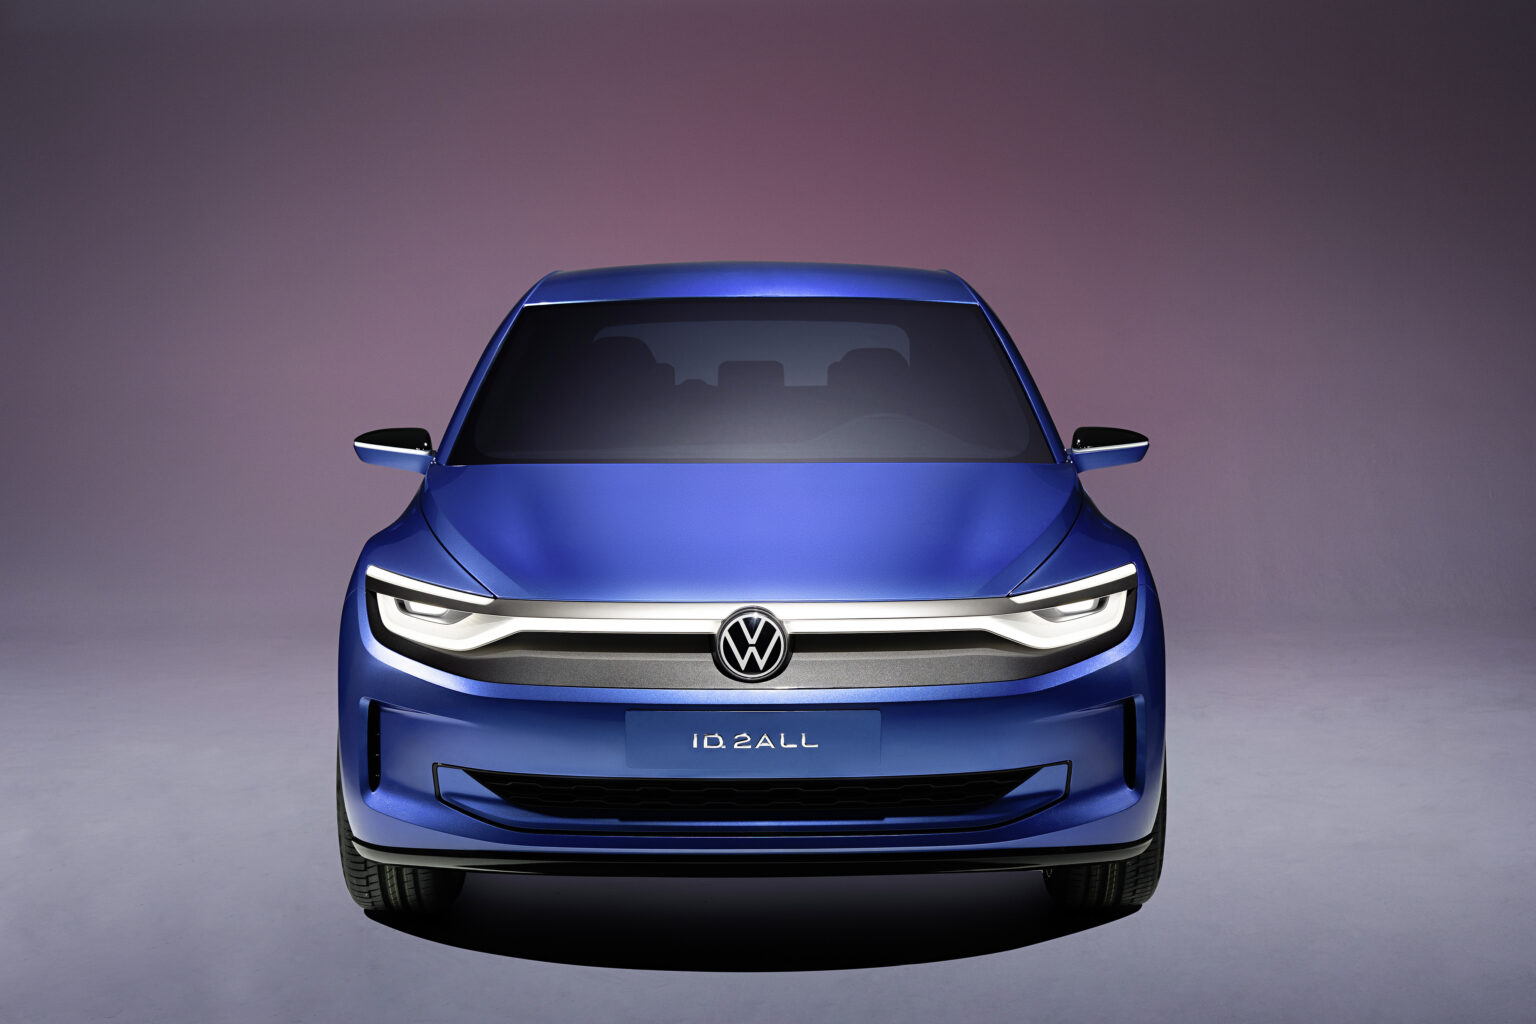 2025 Volkswagen ID.2all Exterior Image 2